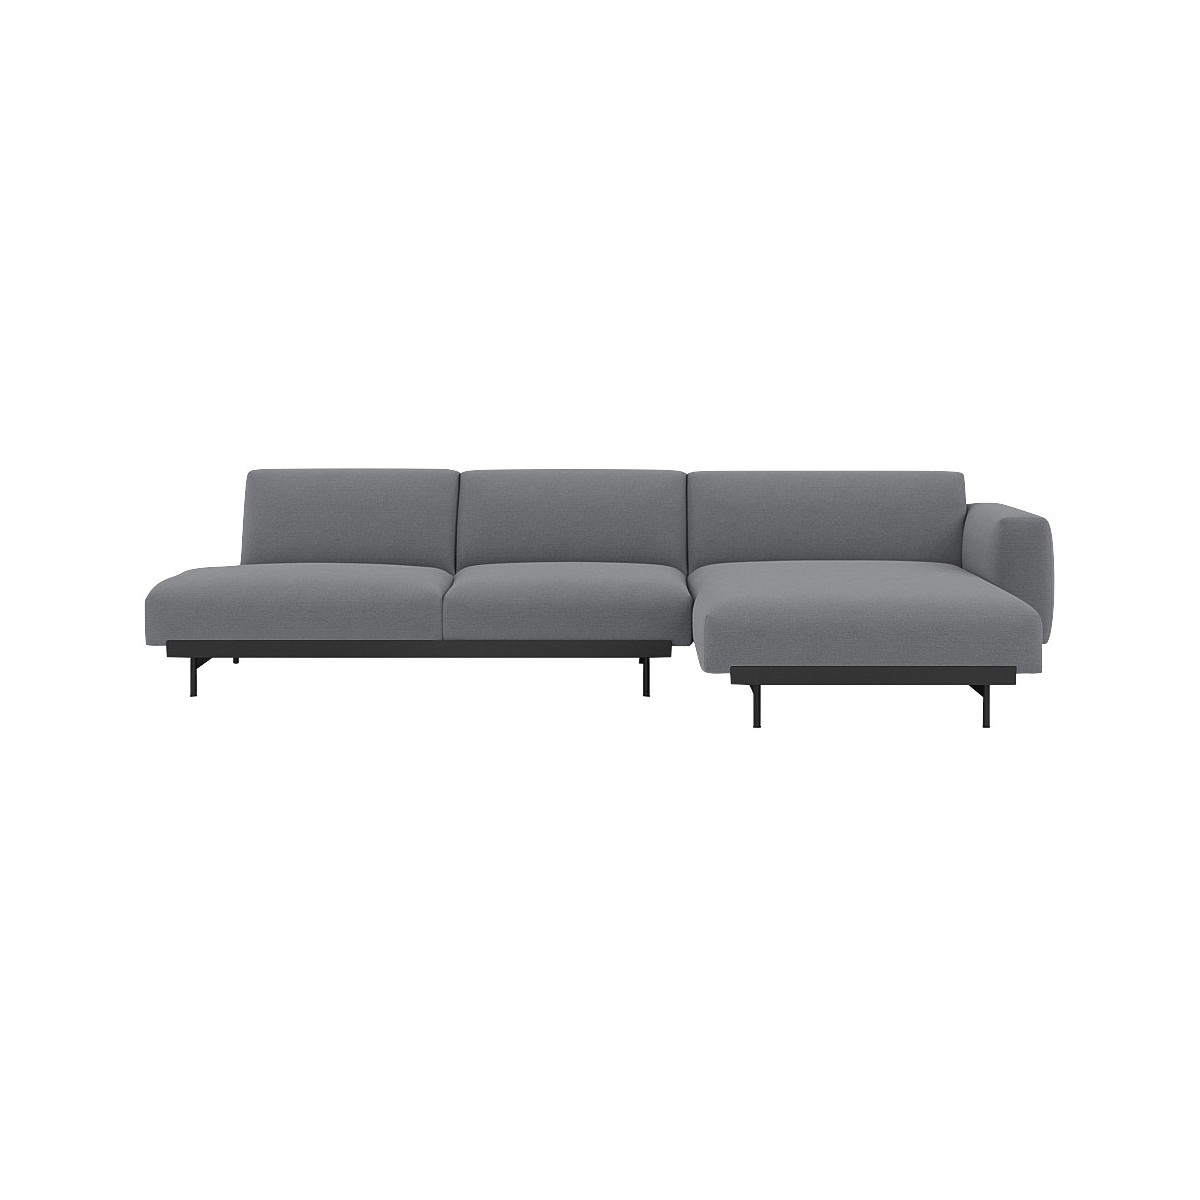 Ocean 80 / black – In Situ 3-seater sofa / configuration 8 – 297 x 169 cm